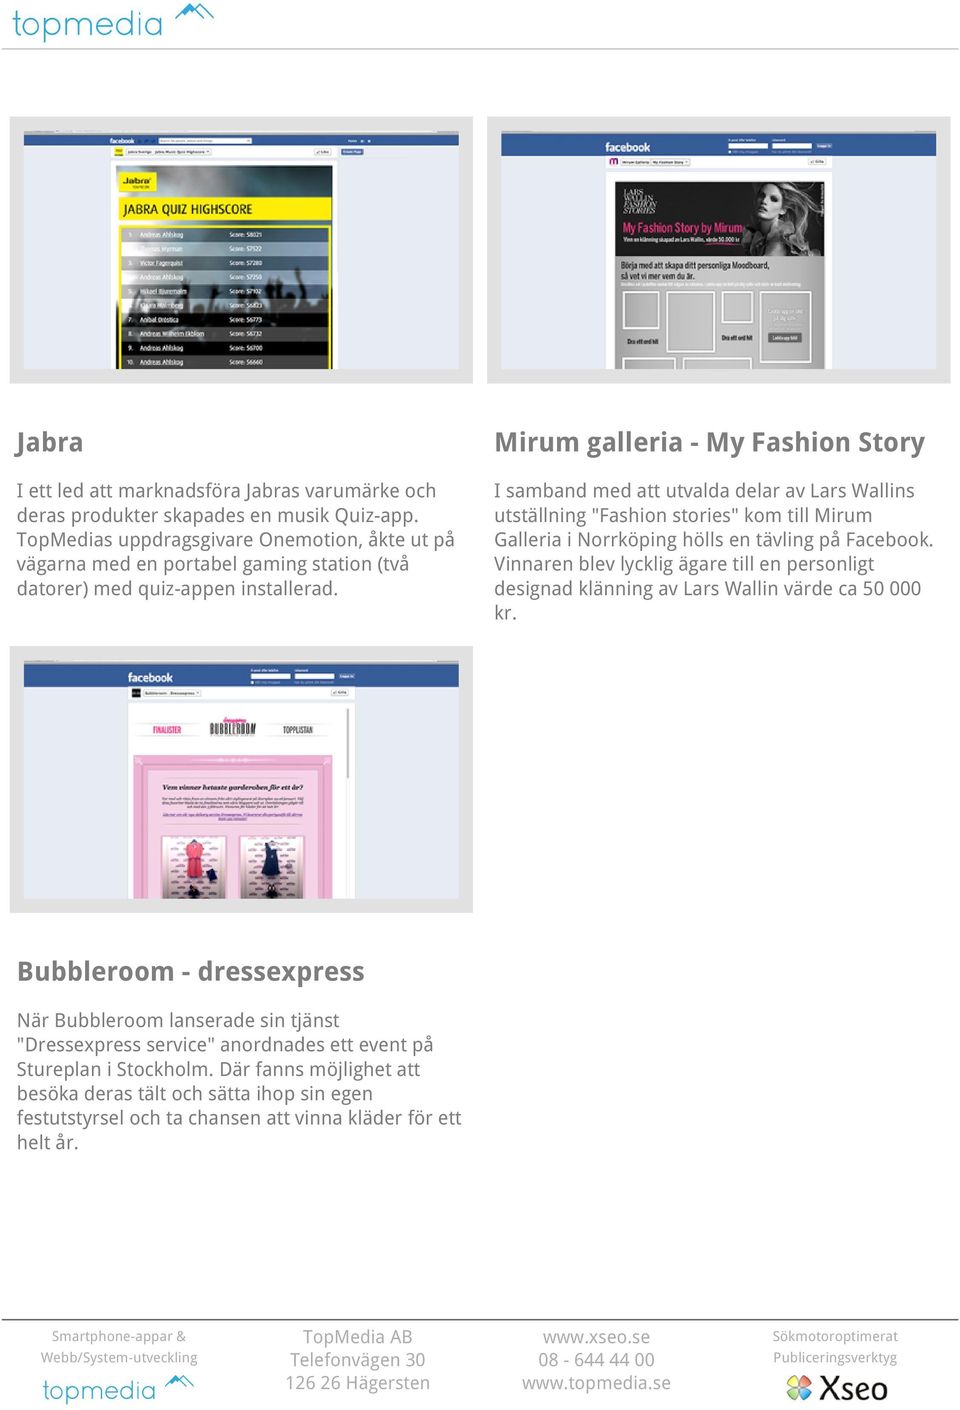 I samband med att utvalda delar av Lars Wallins utställning "Fashion stories" kom till Mirum Galleria i Norrköping hölls en tävling på Facebook.